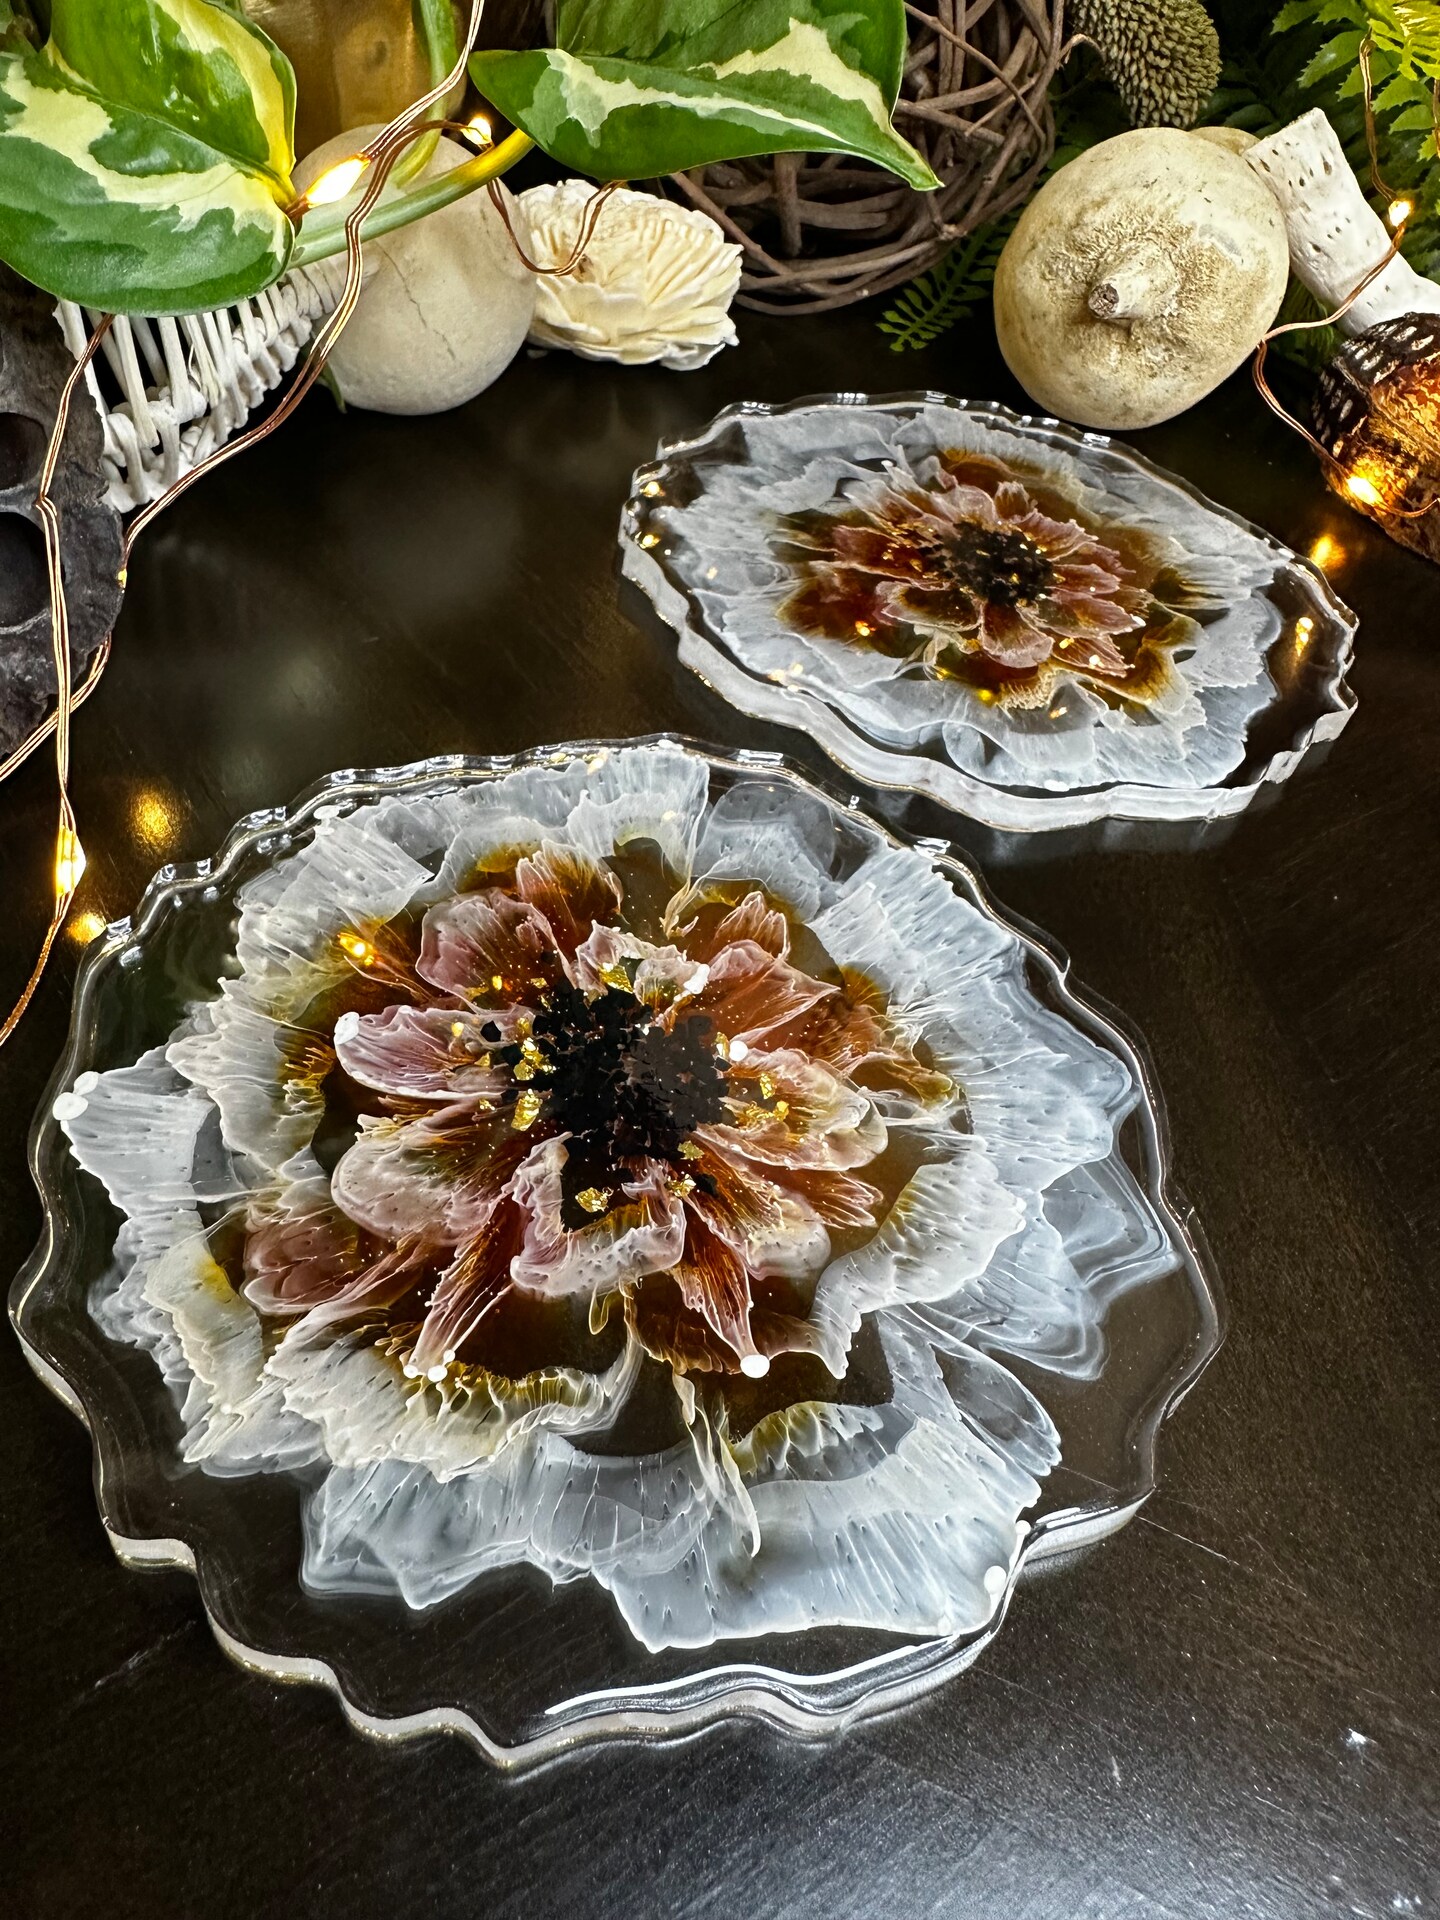 DIY Resin Coasters With Pressed Dried Flowers - Handmade Weekly